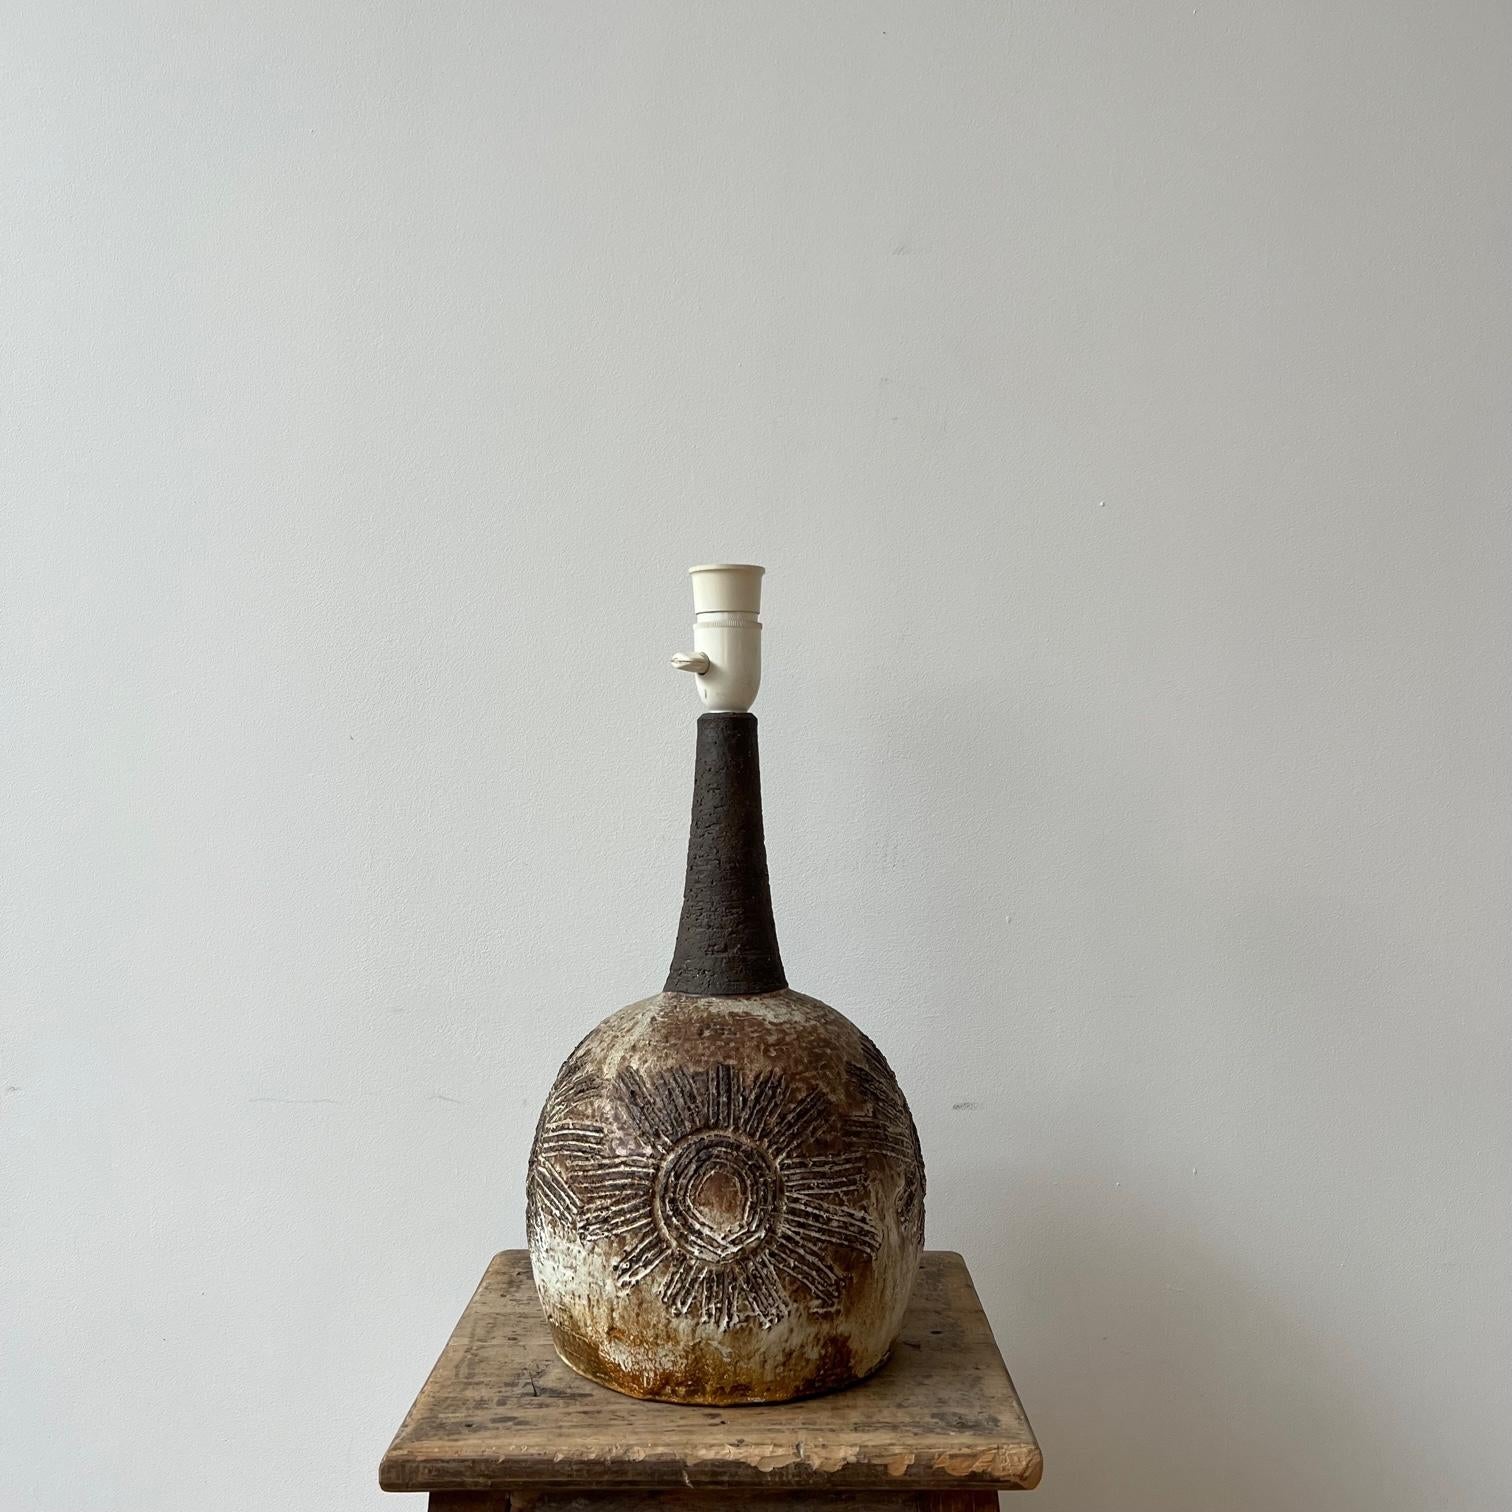 Une lampe de table en céramique réalisée par un artiste. 

Danemark, années 1960. 

Signé au revers de la page. 

Finition unique et inhabituelle. 

Depuis le recâblage et le test PAT. 

Emplacement : Galerie de Londres.

Dimensions :